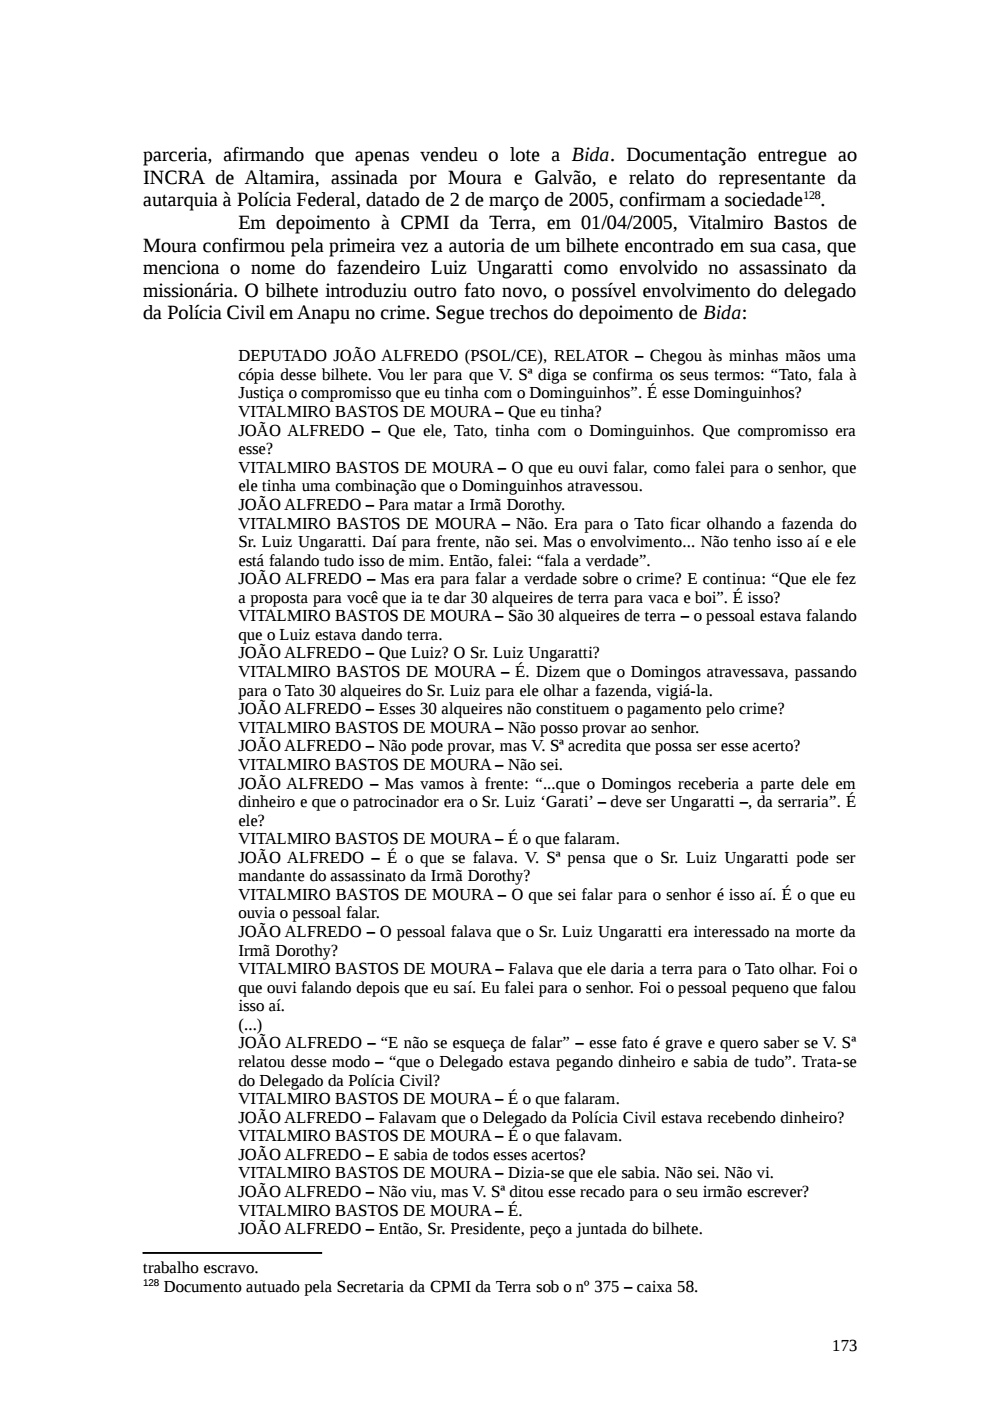 Page 173 from Relatório final da comissão